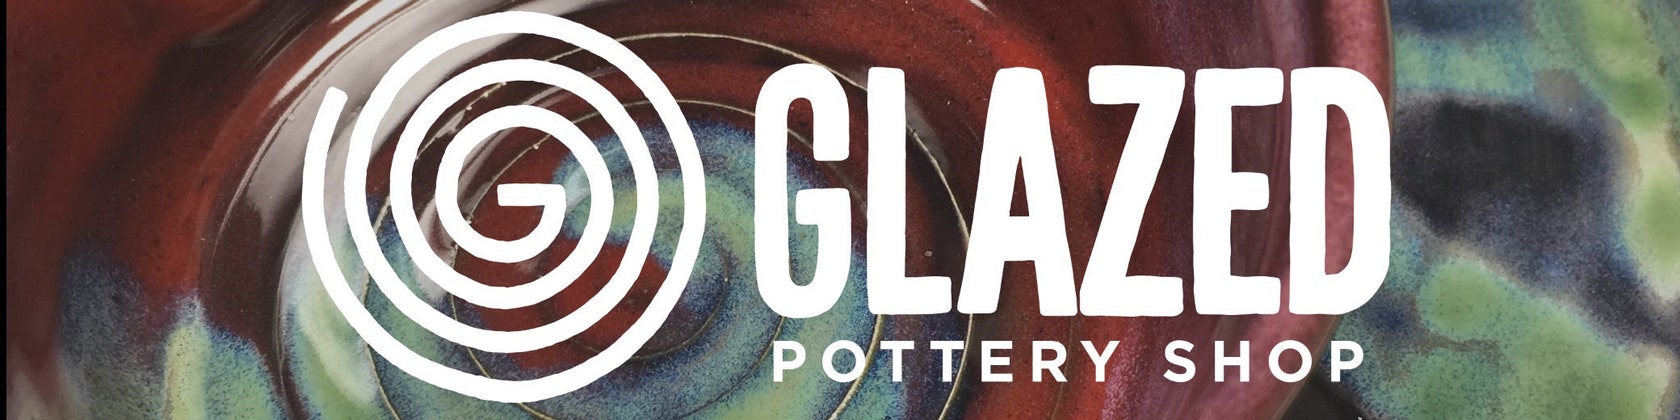 Glazed Pottery Shop